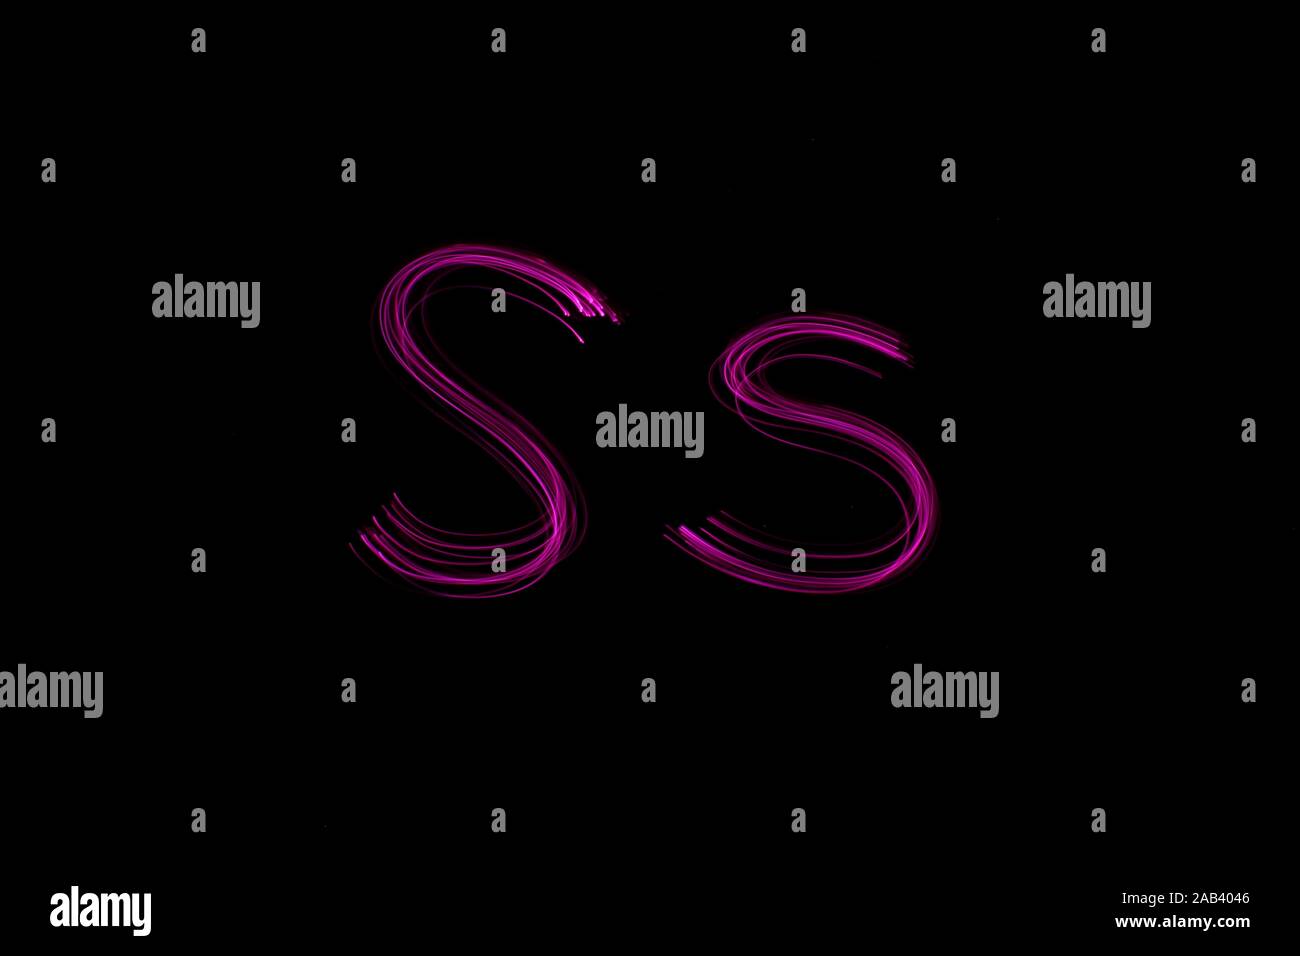 Une longue exposition photographie de la lettre s en couleur néon rose, en majuscules et minuscules, motif de lignes parallèles sur un fond noir. Banque D'Images